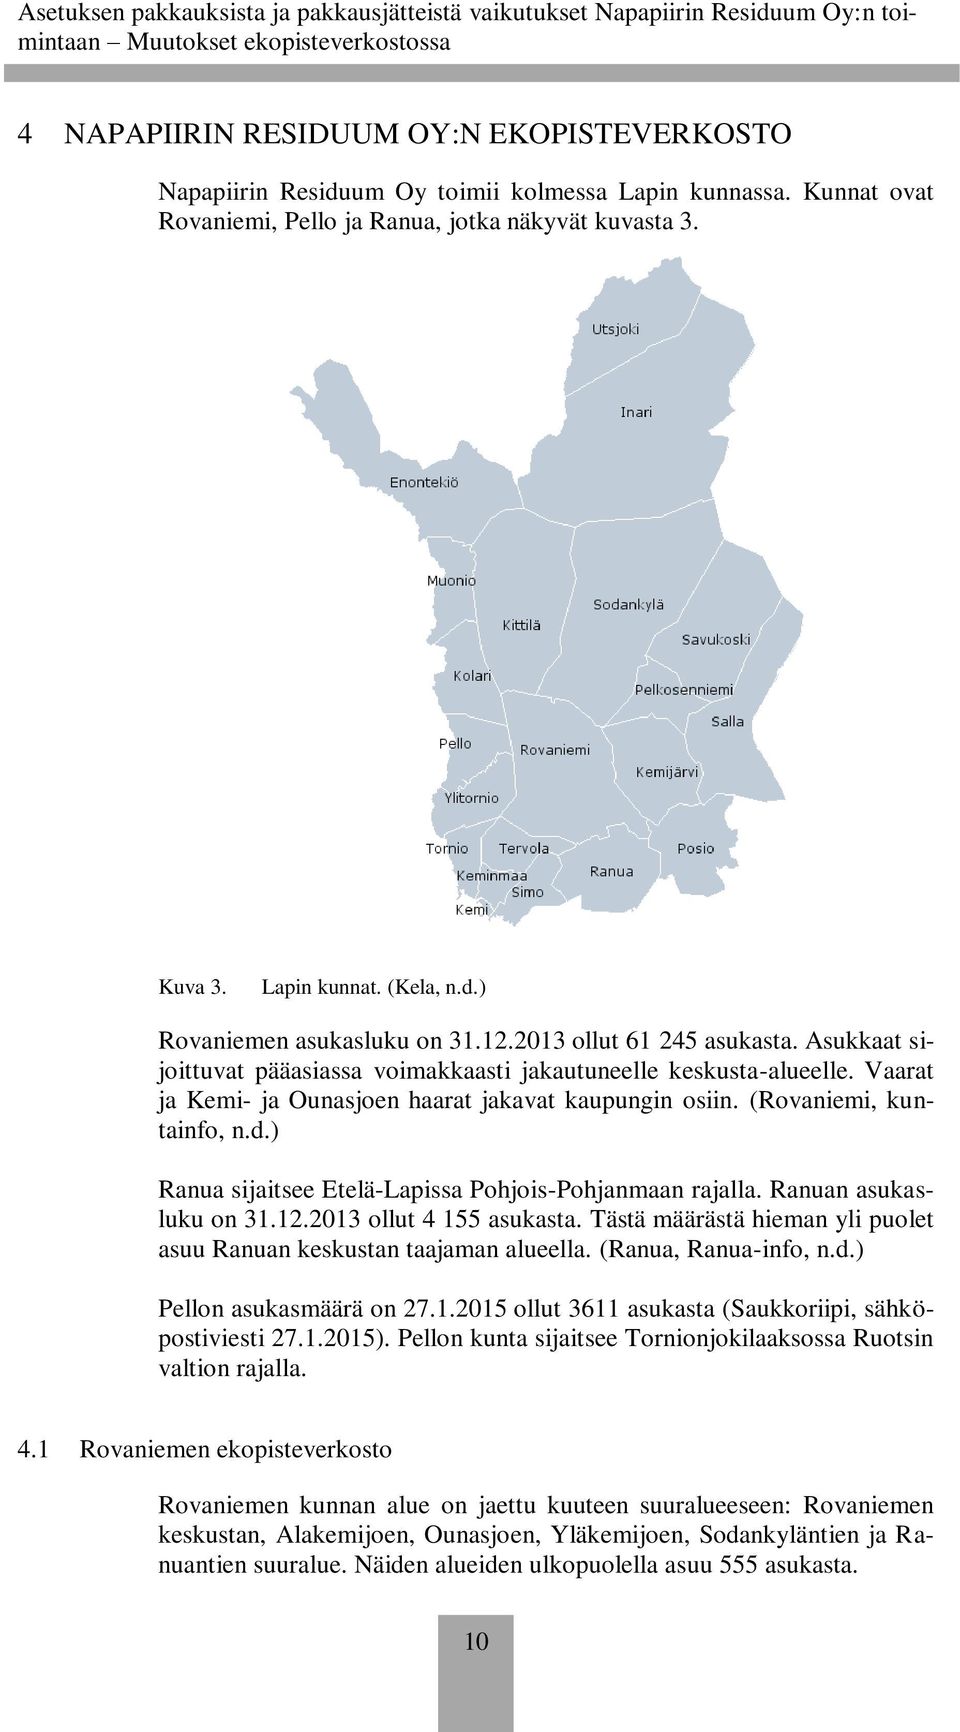 ) Ranua sijaitsee Etelä-Lapissa Pohjois-Pohjanmaan rajalla. Ranuan asukasluku on 31.12.2013 ollut 4 155 asukasta. Tästä määrästä hieman yli puolet asuu Ranuan keskustan taajaman alueella.